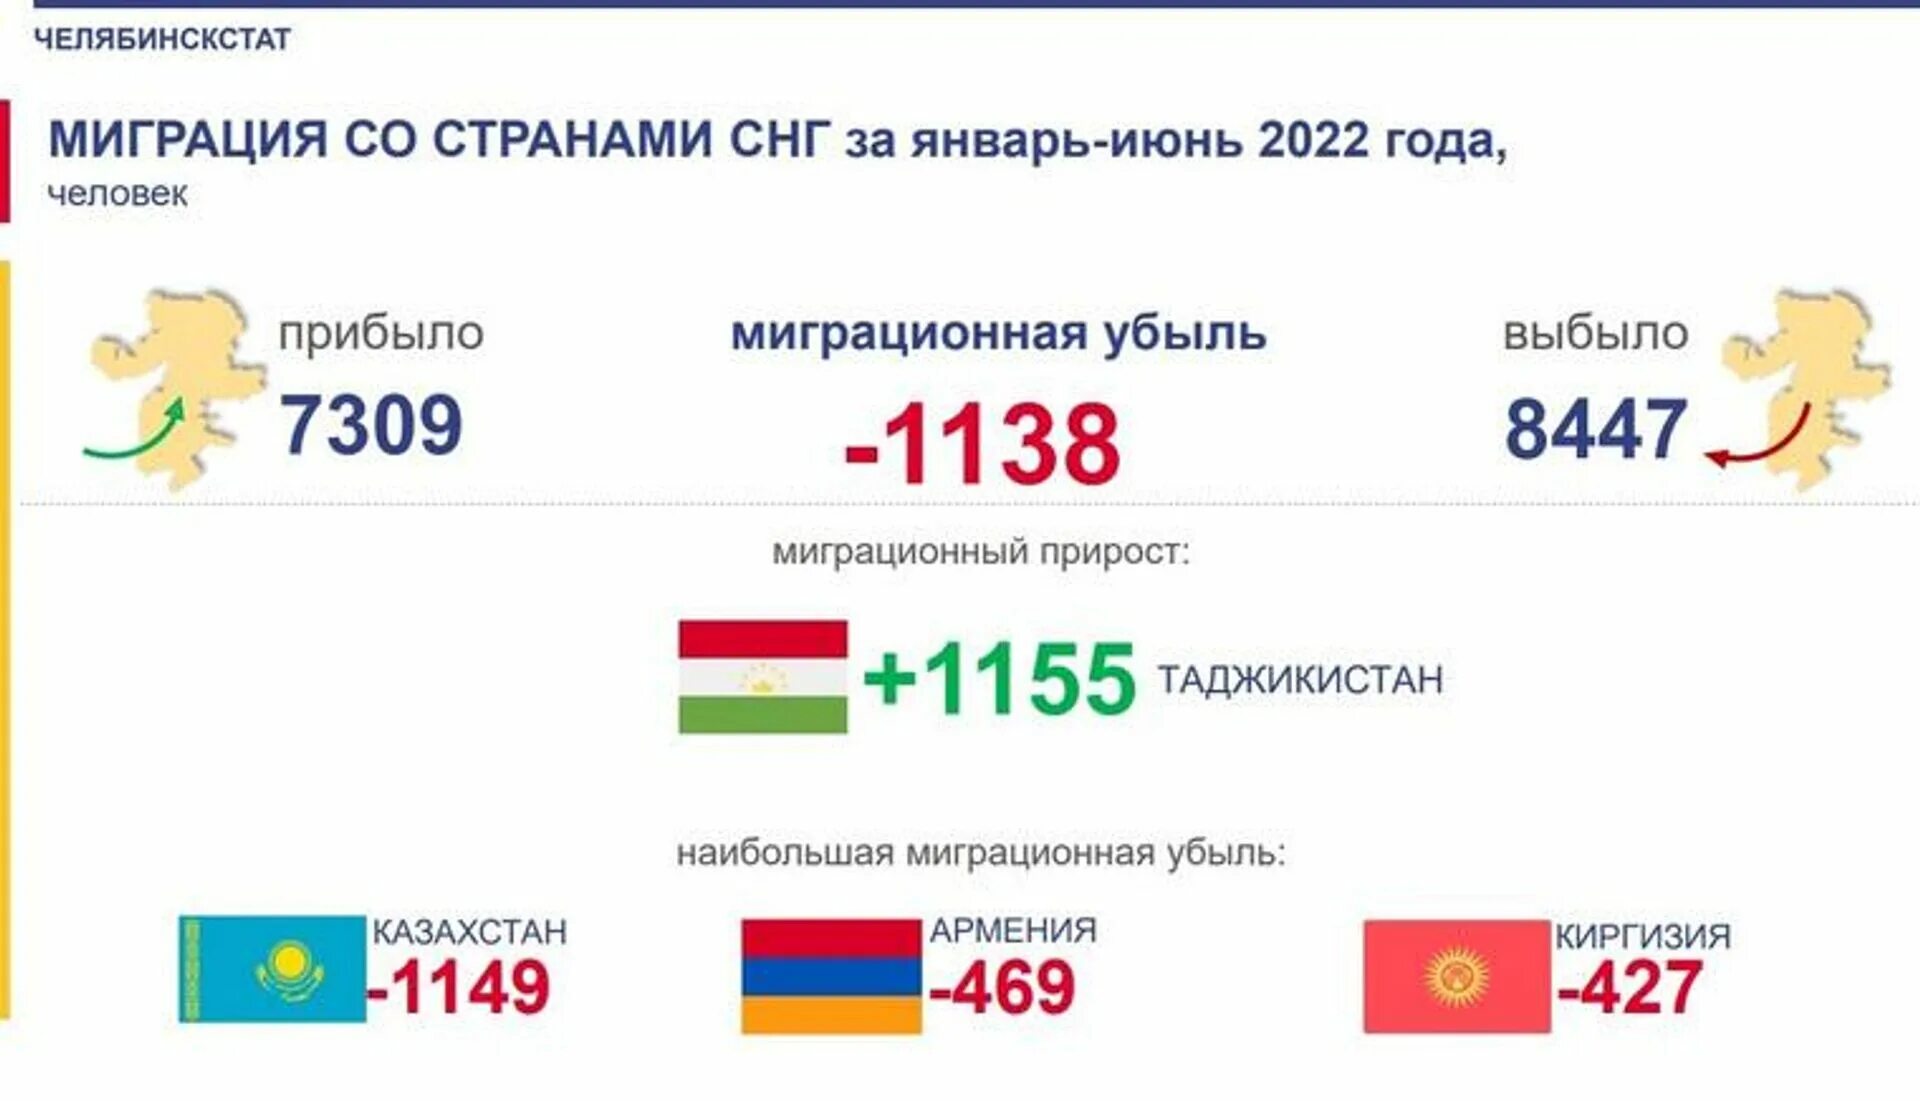 Население страны россии 2022 году. Мигранты в Россию по годам 2022. Статистика мигрантов в России 2022. Миграция в РФ 2022. Миграция 2022 год Россия.